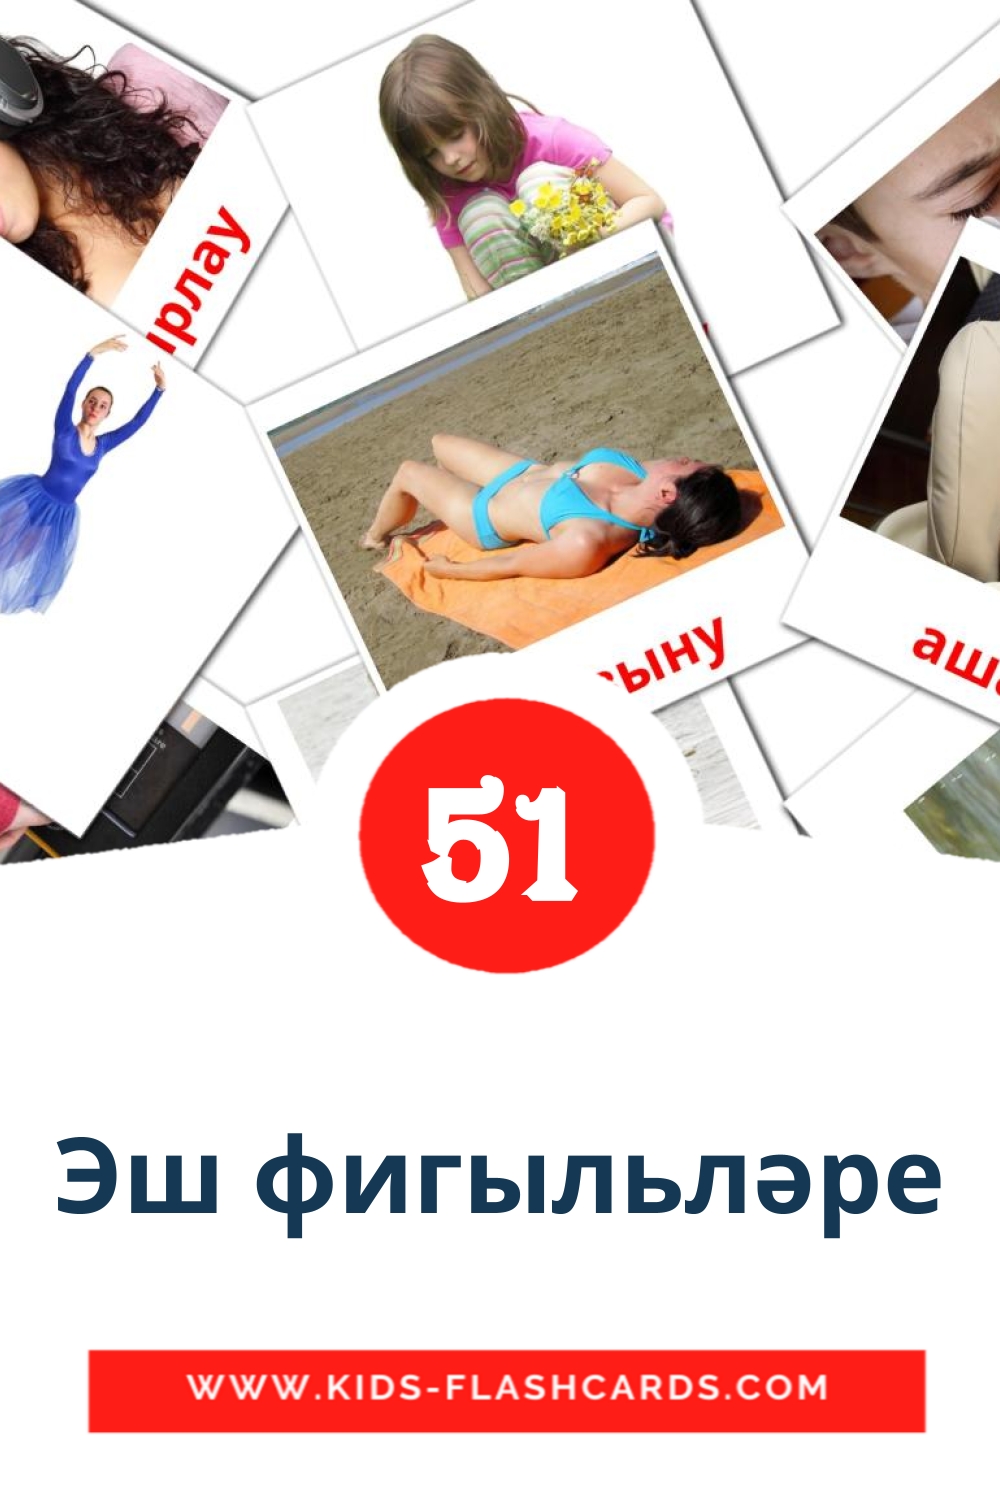 51 Cartões com Imagens de Эш фигыльләре para Jardim de Infância em tatar